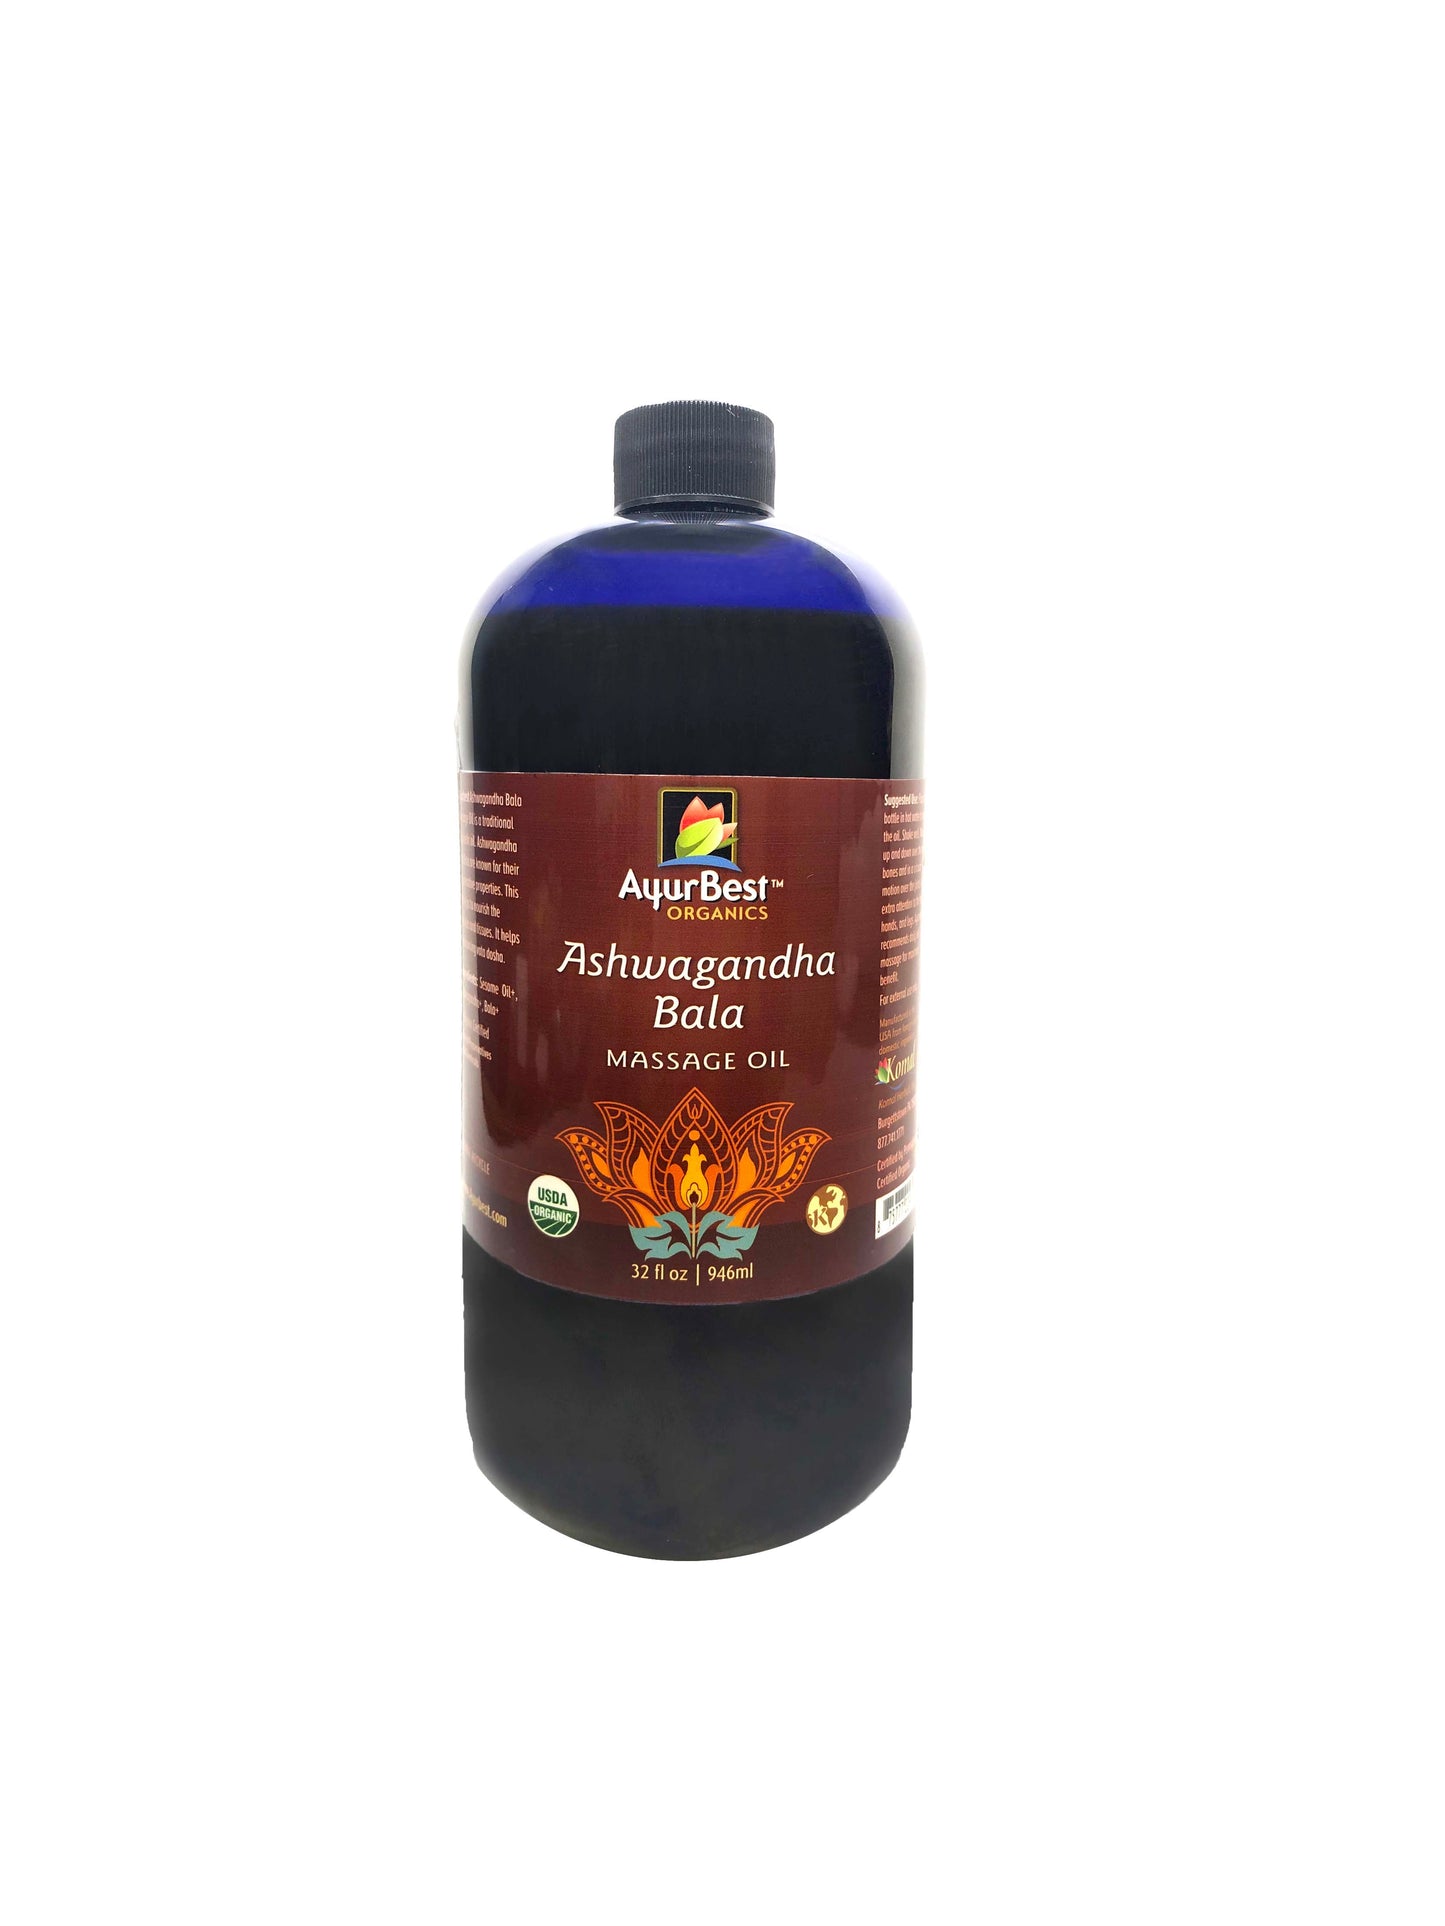 Wholesale Oils - Ashwagandha Bala Massage Oil, Organic